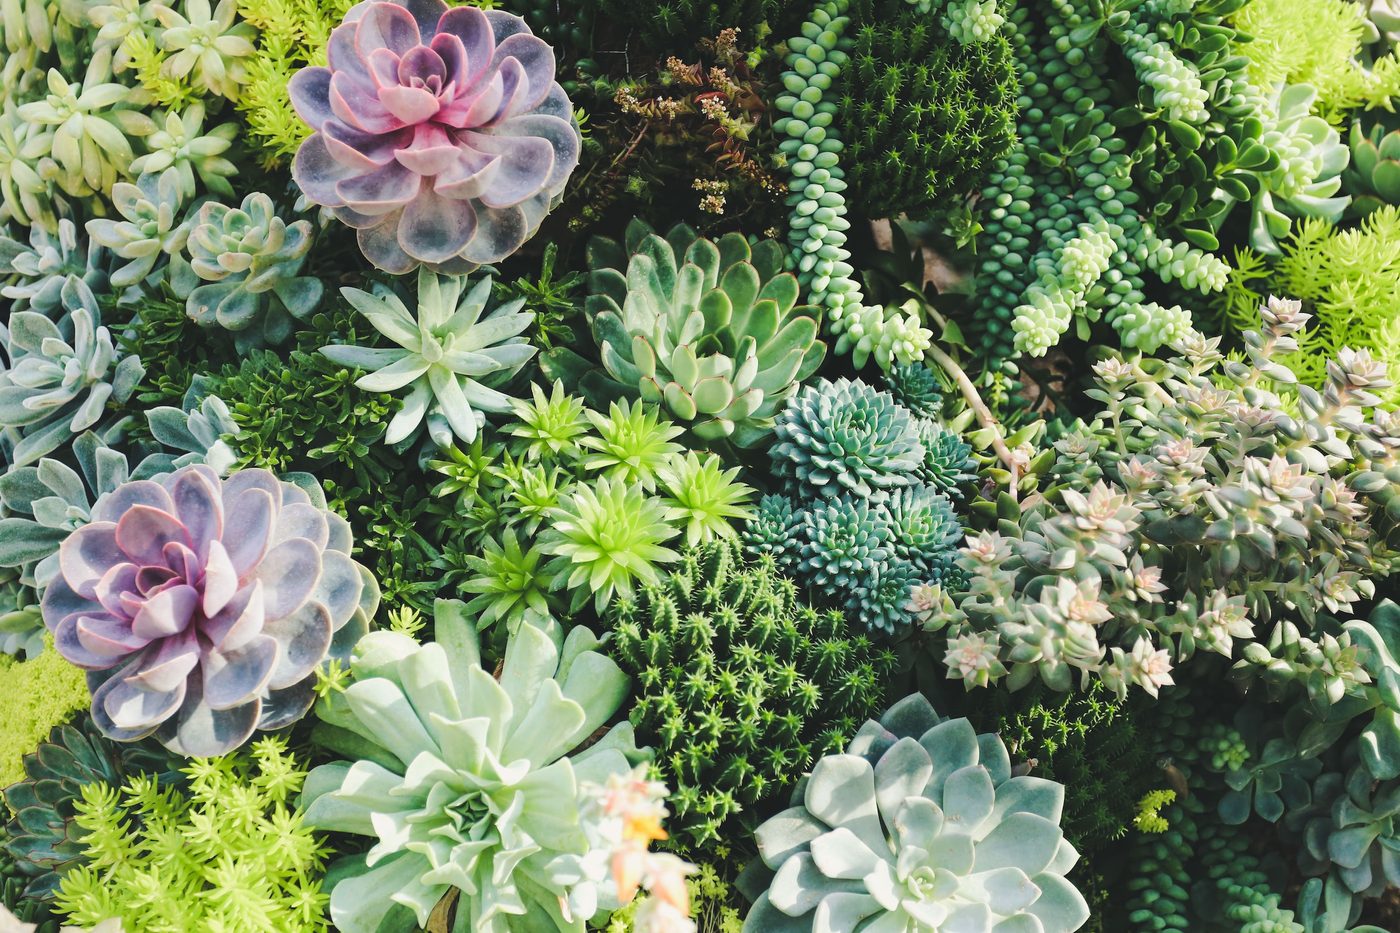 A colorful arrangement of succulent plants